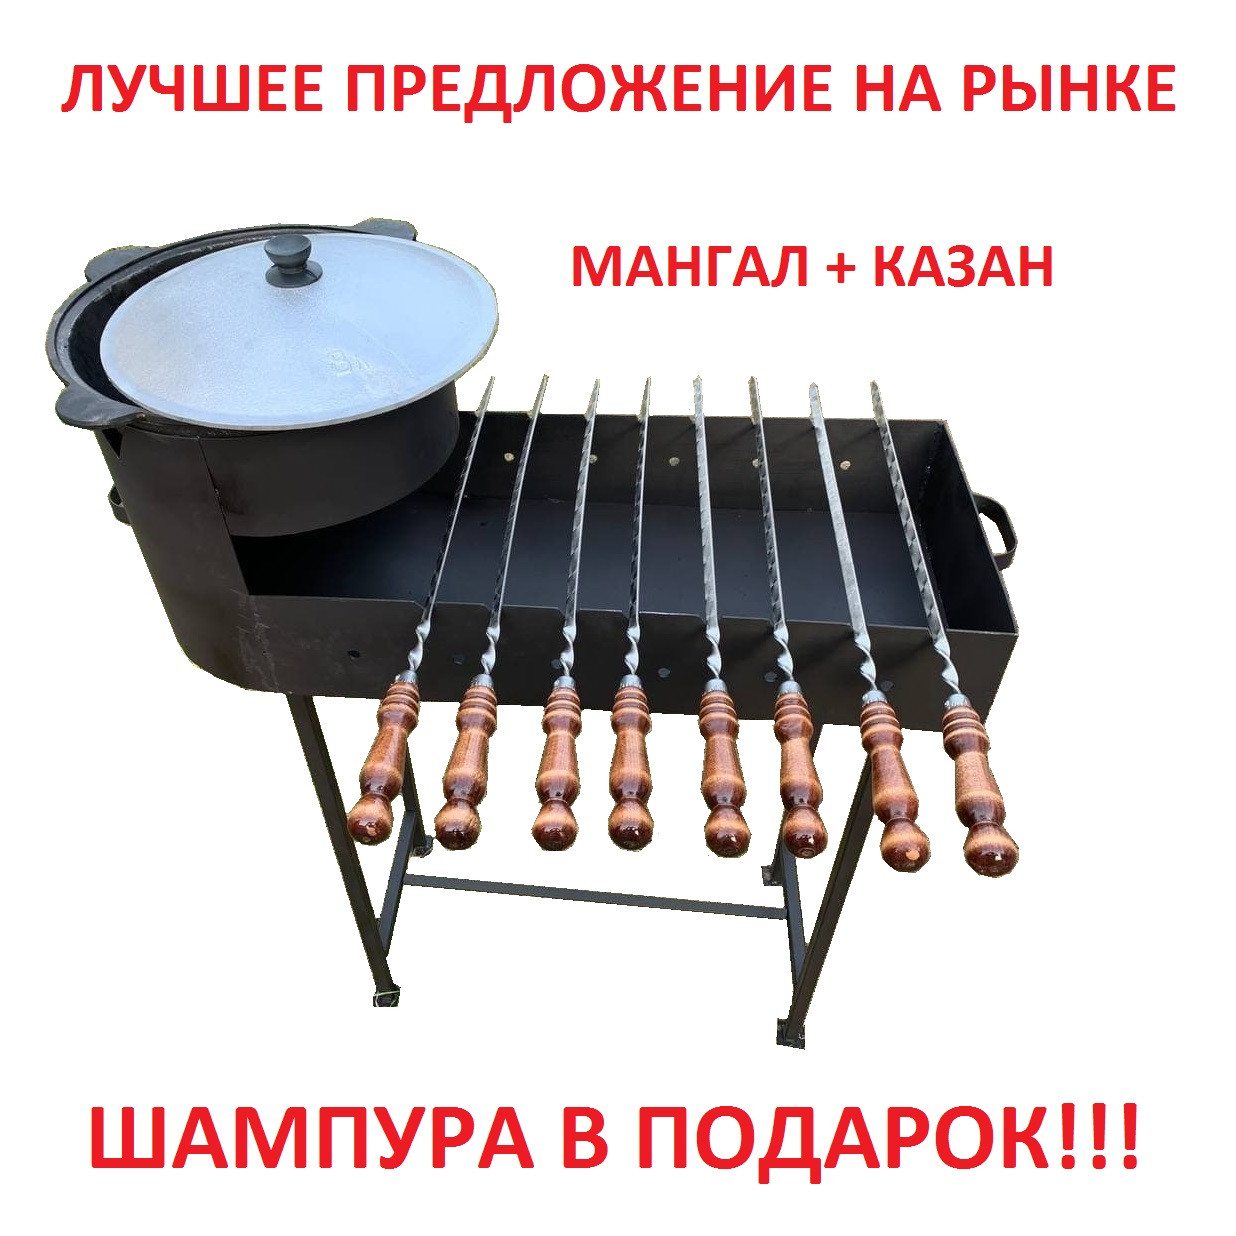 Набор Мангал с печью для казана и узбекский казан на 8 литров